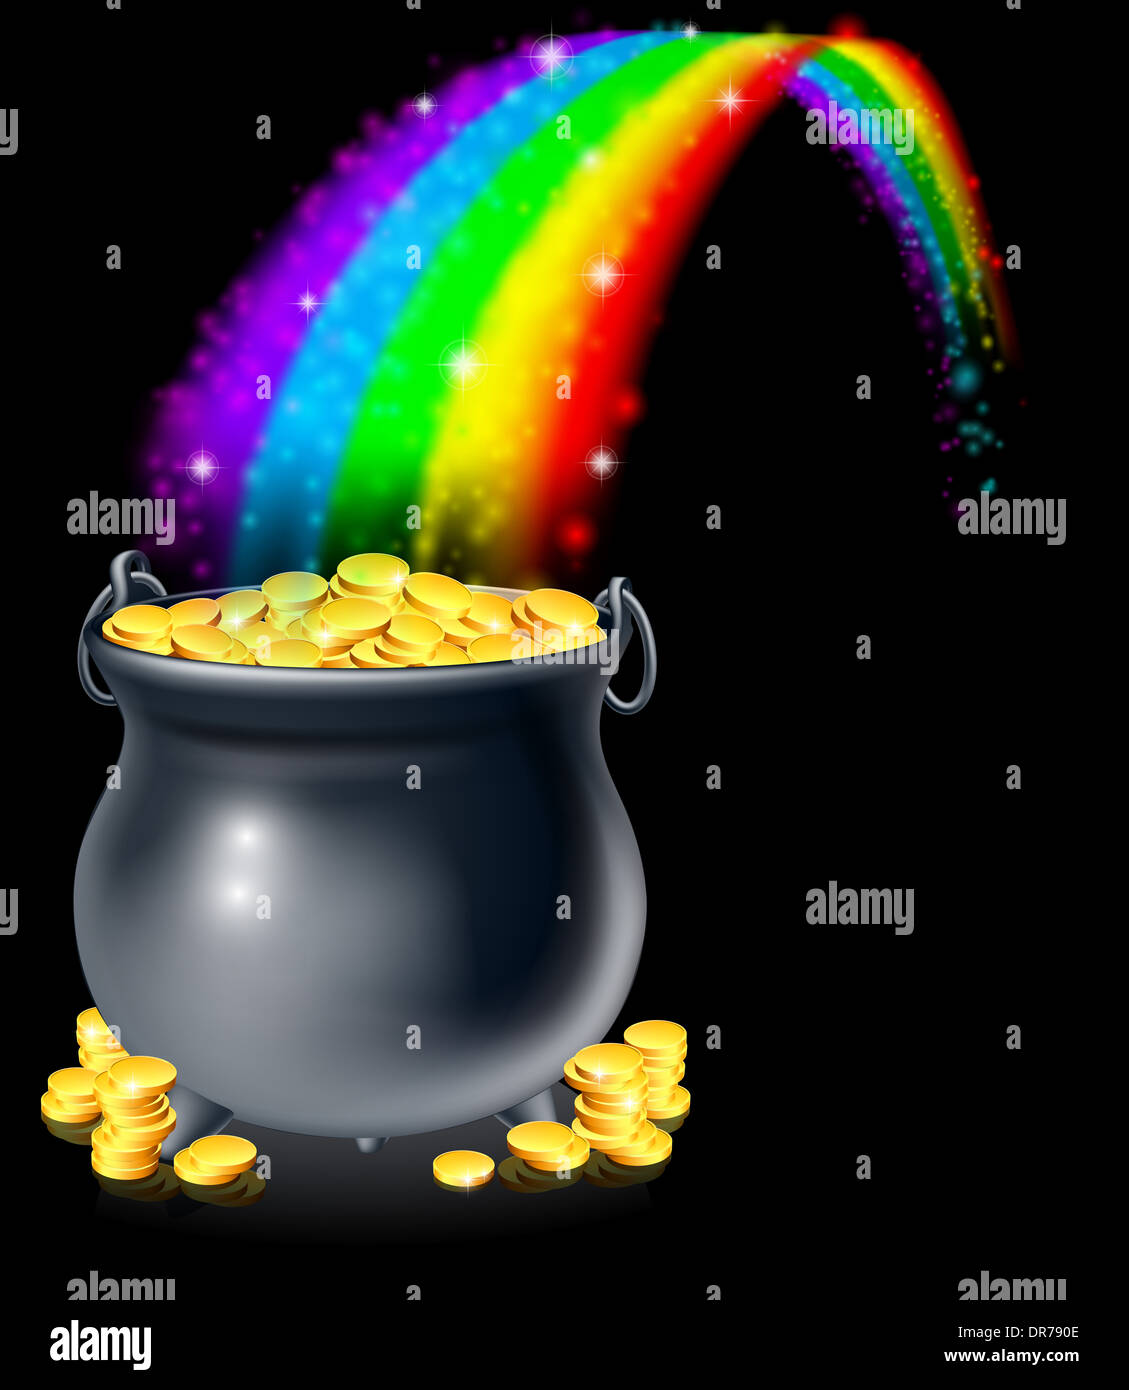 Un caldero o una olla llena de monedas de oro al final del arco iris. Olla de Oro al final del arco iris concepto Foto de stock